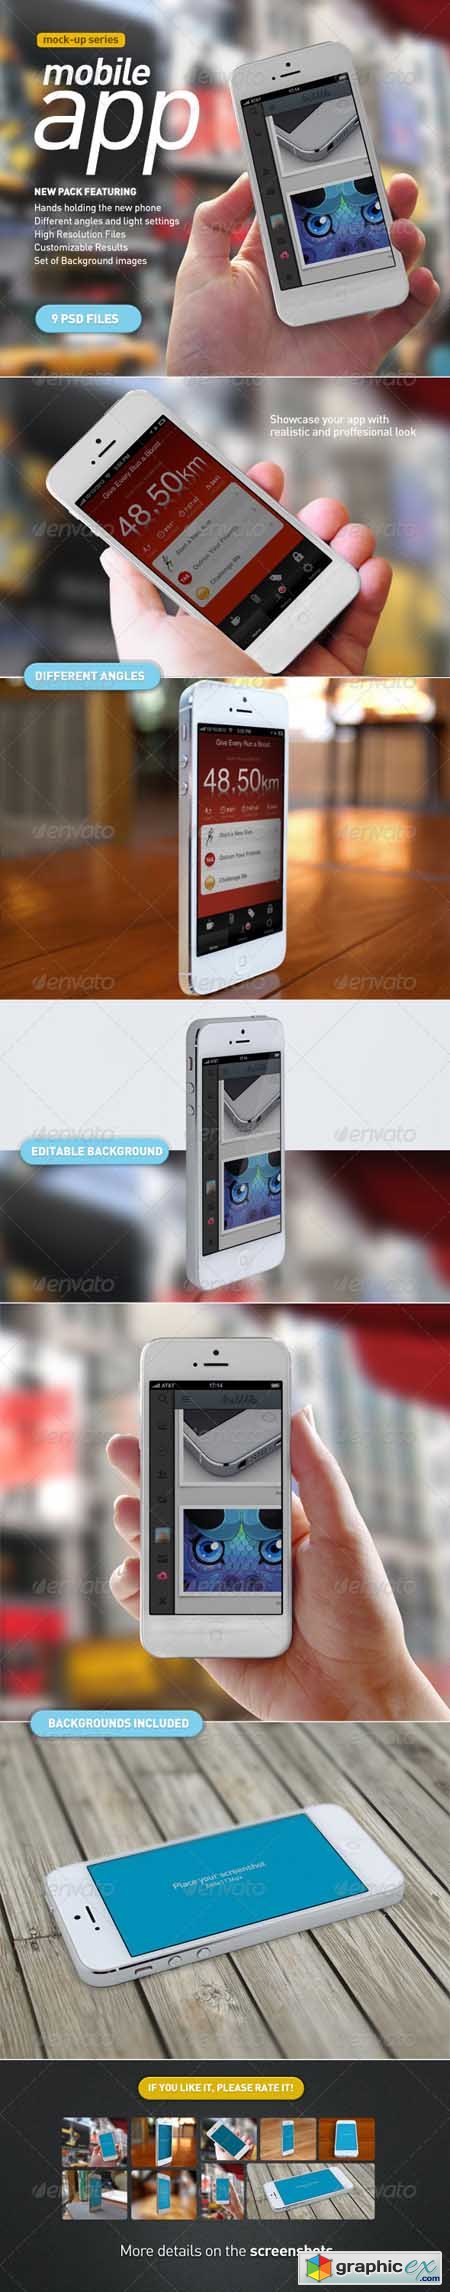 Mobile App | White Phone Mock-Up